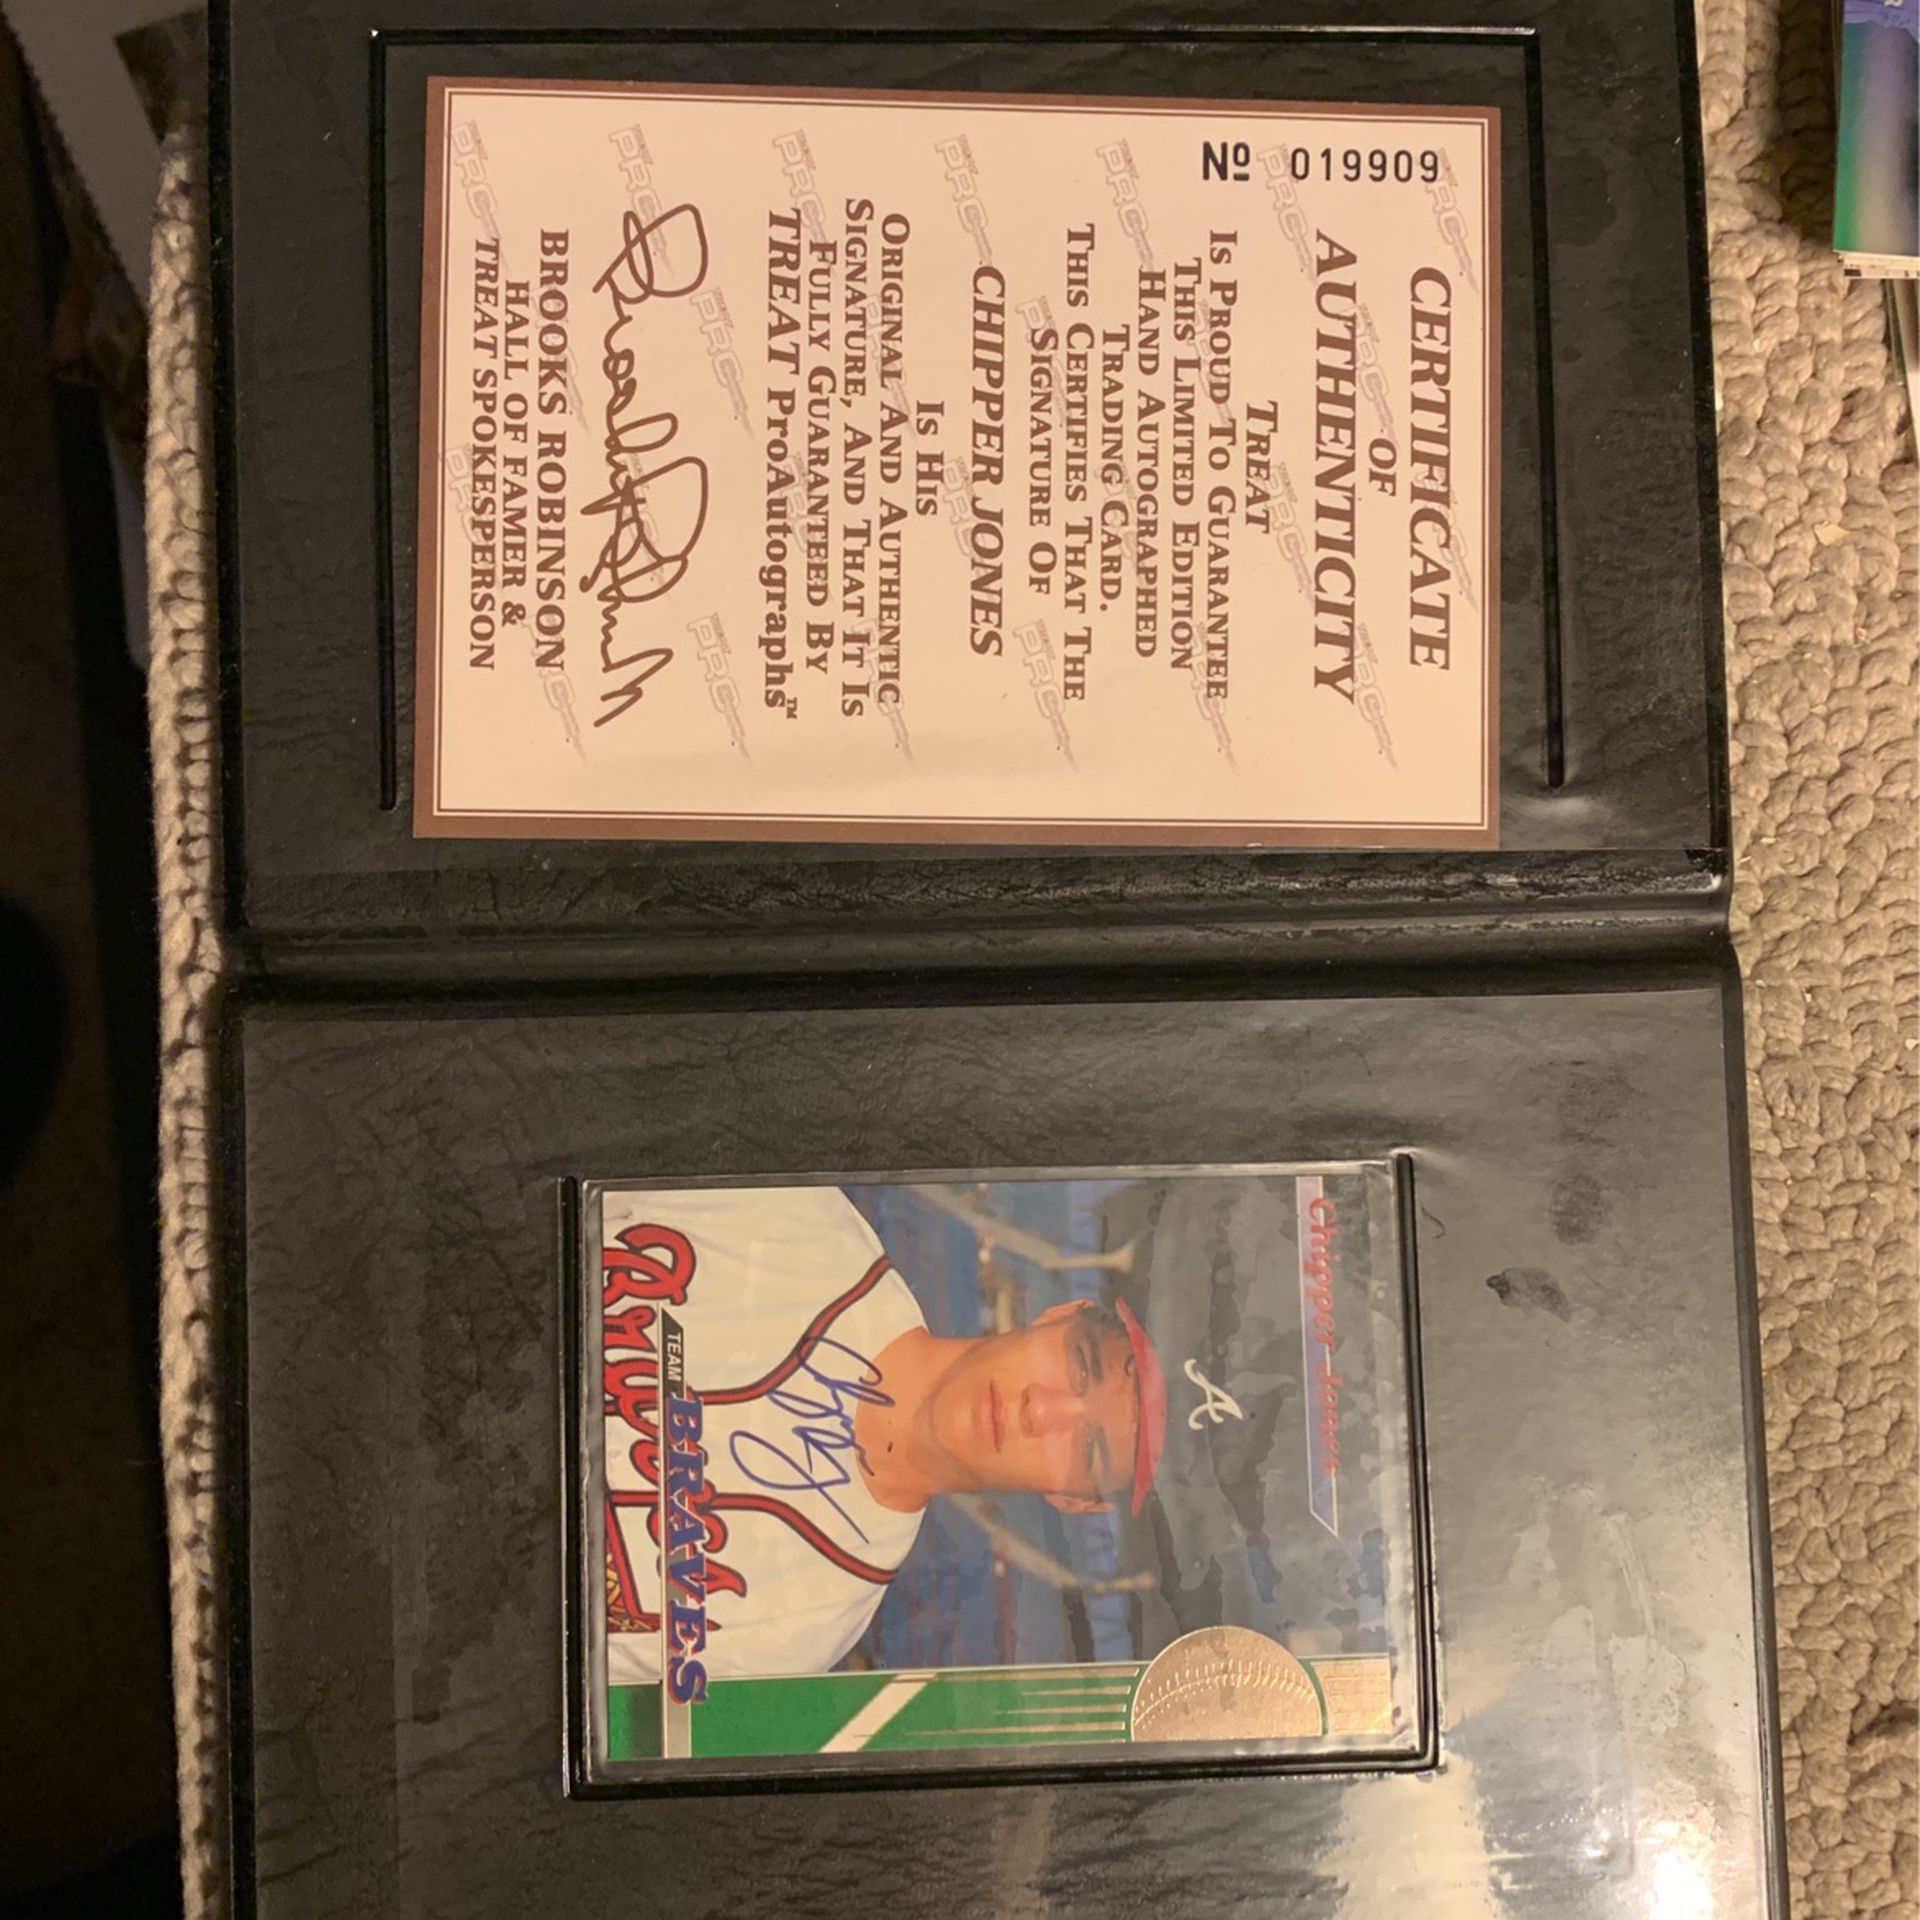 Chipper Jones Autograph Certified Treat Baseball card Cb4